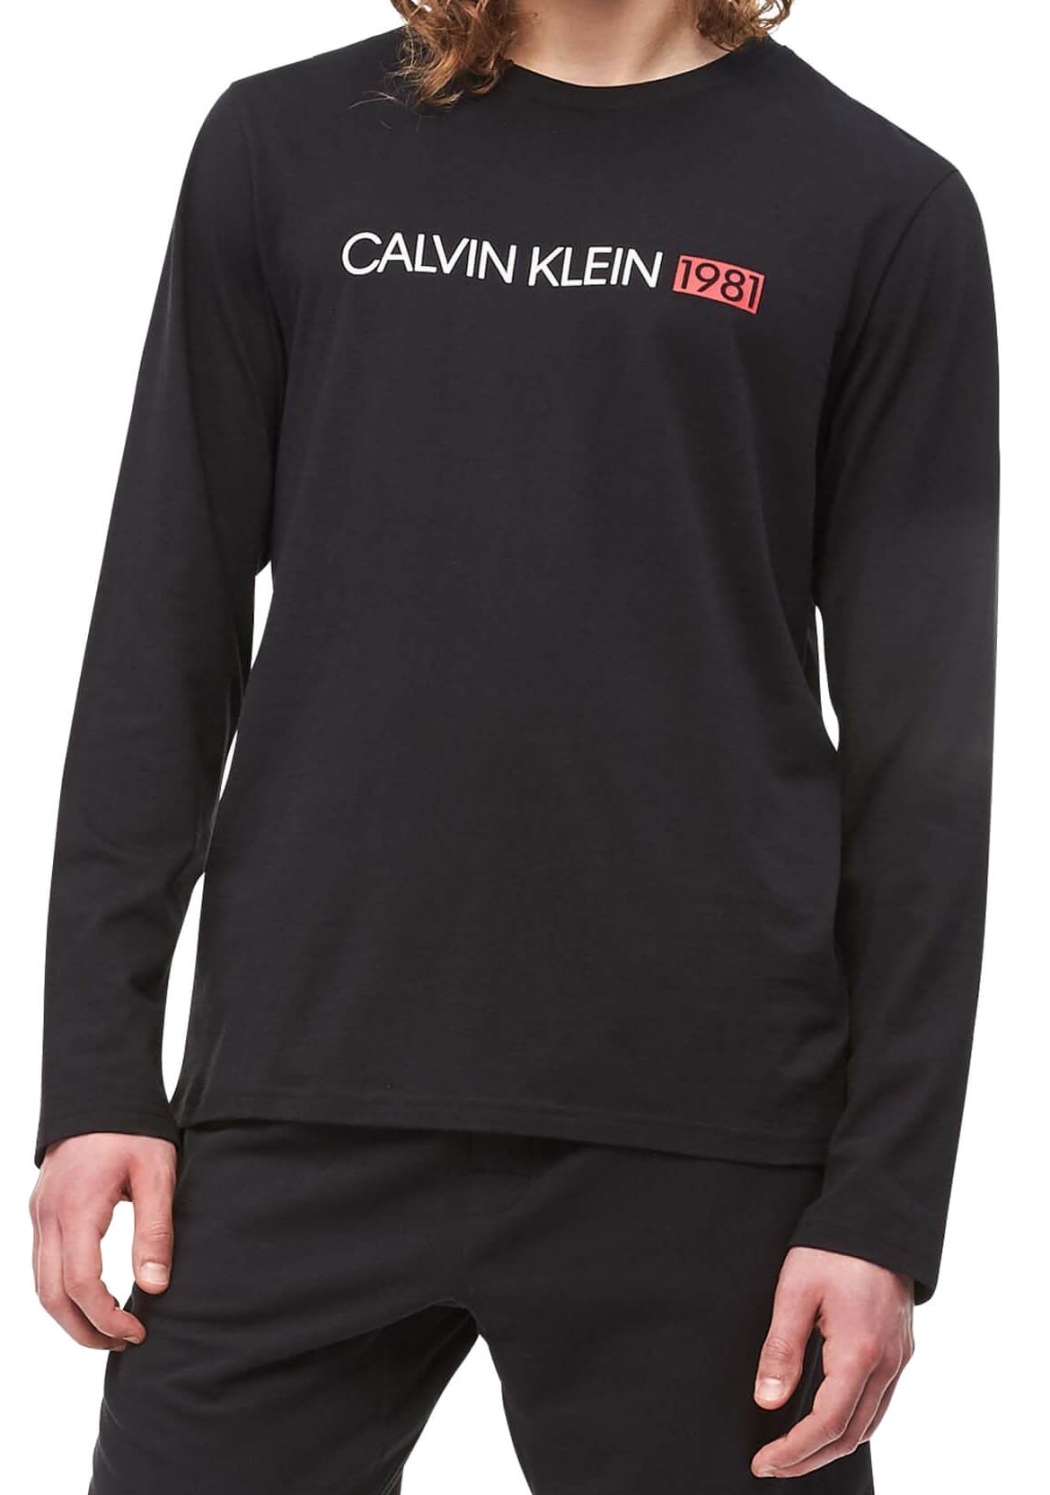 Pánské tričko Calvin Klein NM1705